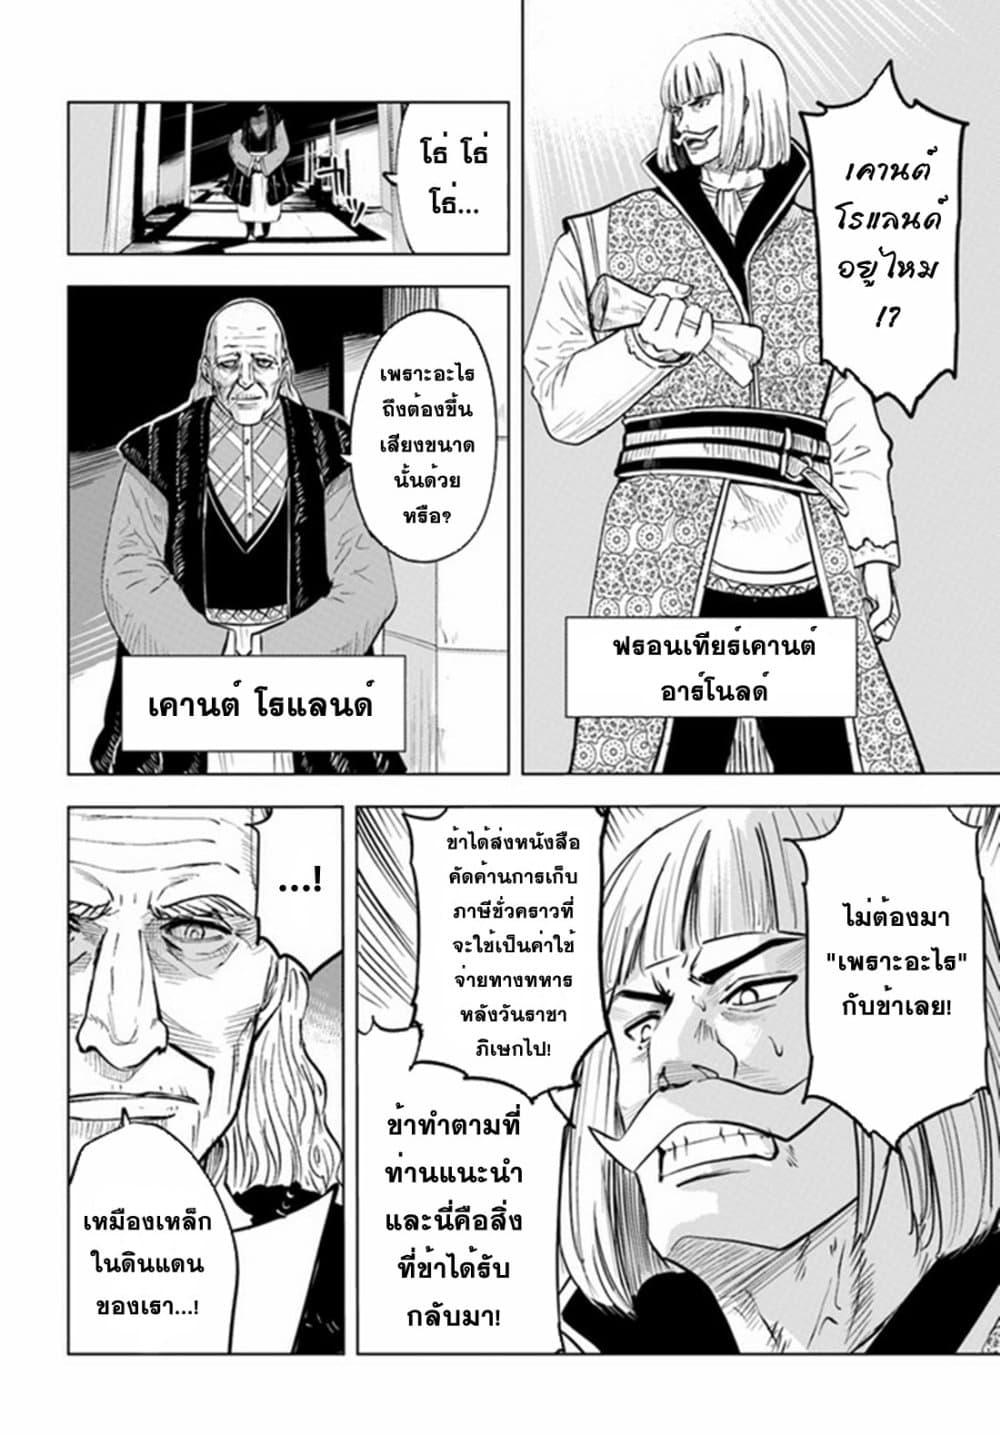 Oukoku e Tsuzuku Michi dorei Kenshi no Nariagari Eiyutan (Haaremu Raifu) - Road to the Kingdom Slave Swordsman the Rise of Heroes - Harem Life 33-33